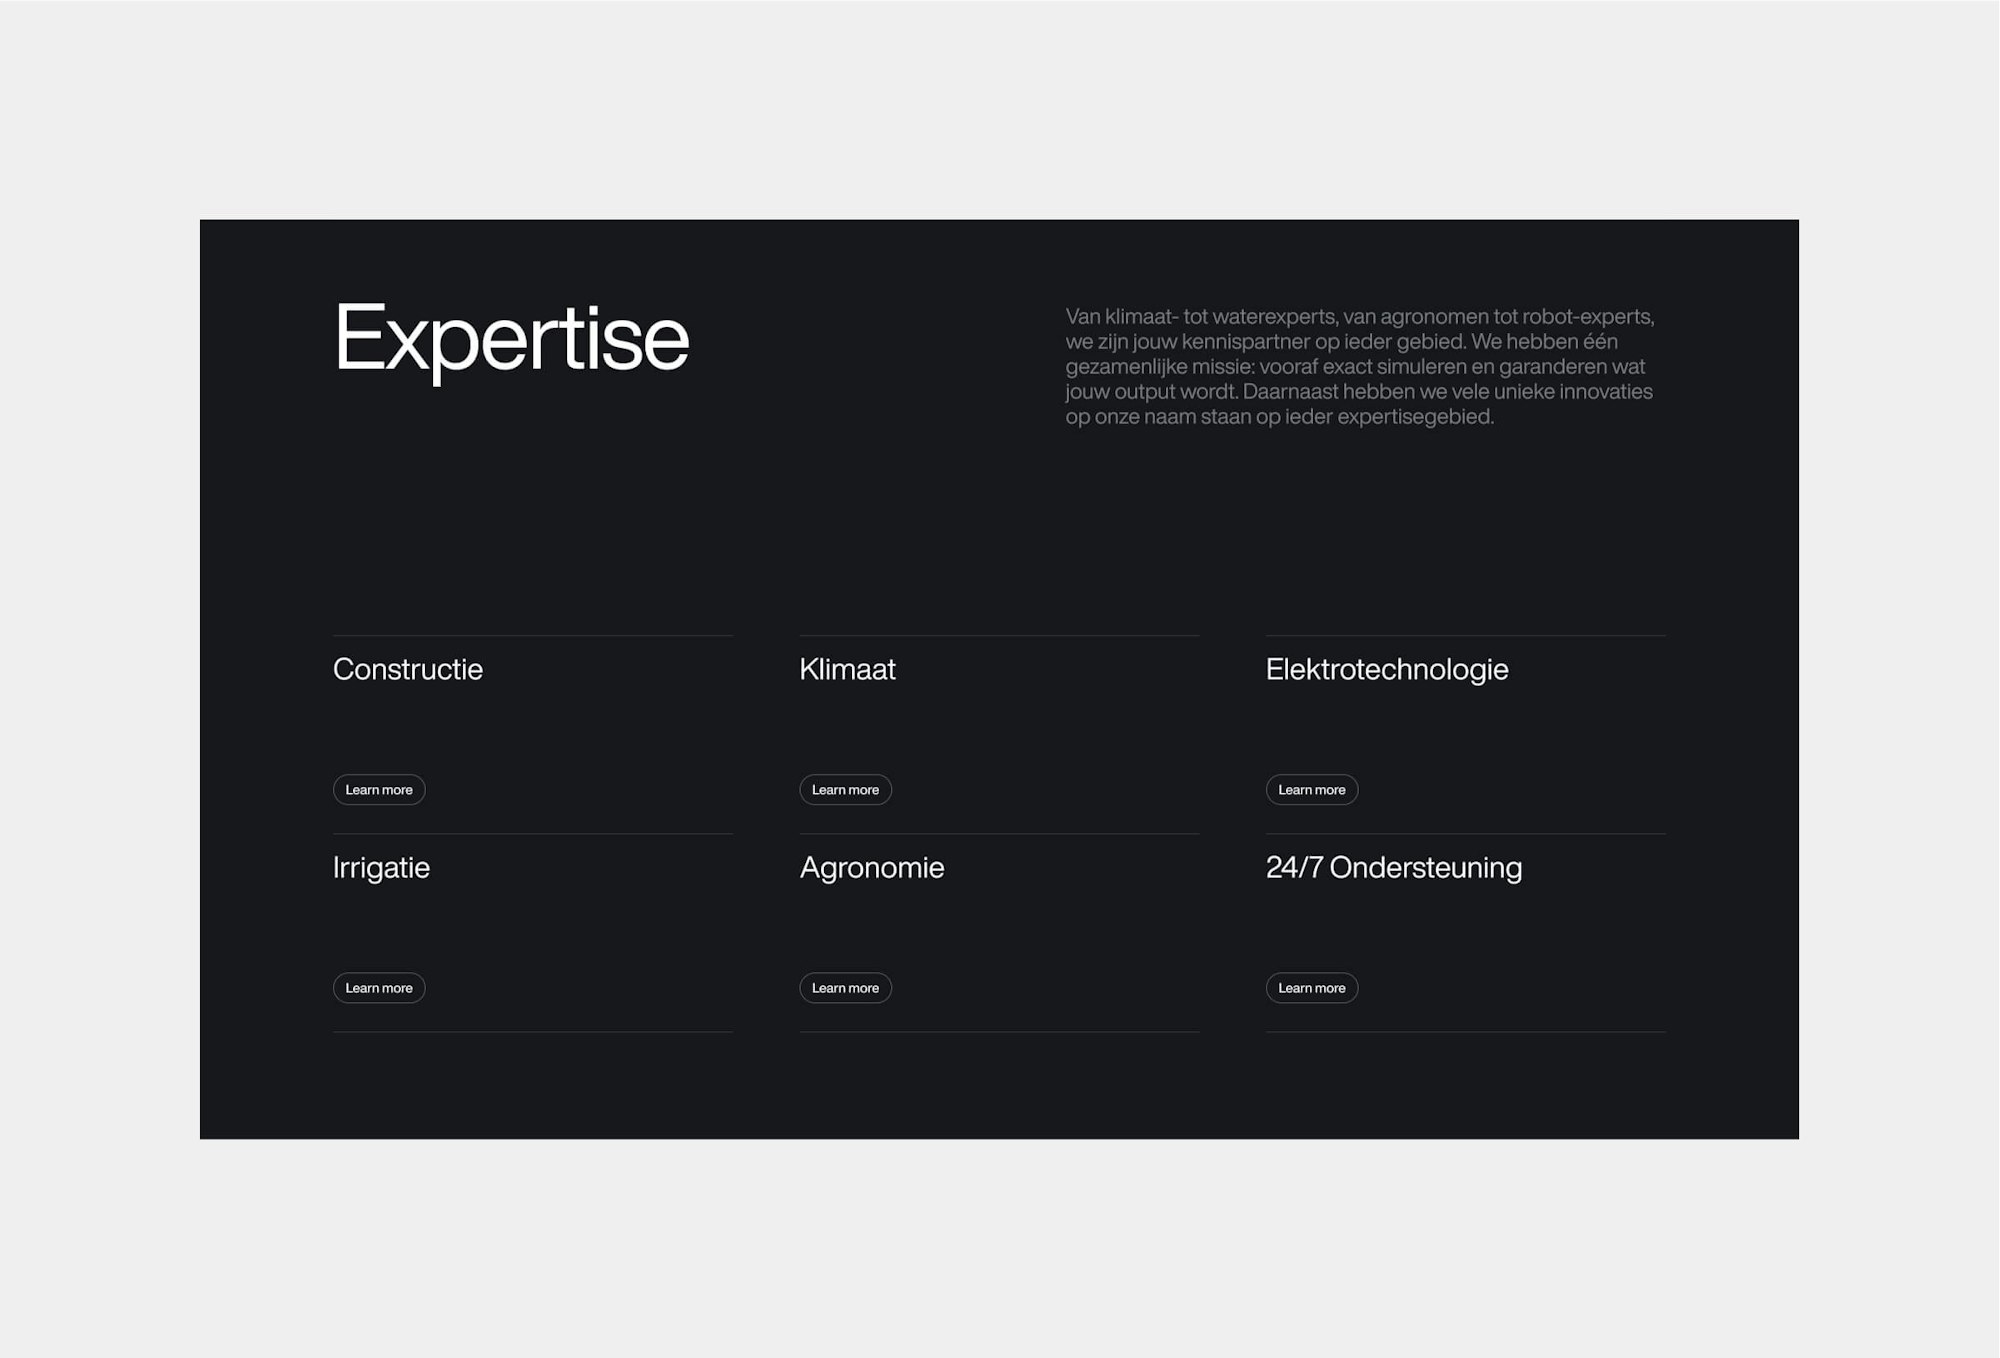 Certhon web design desktop expertise page